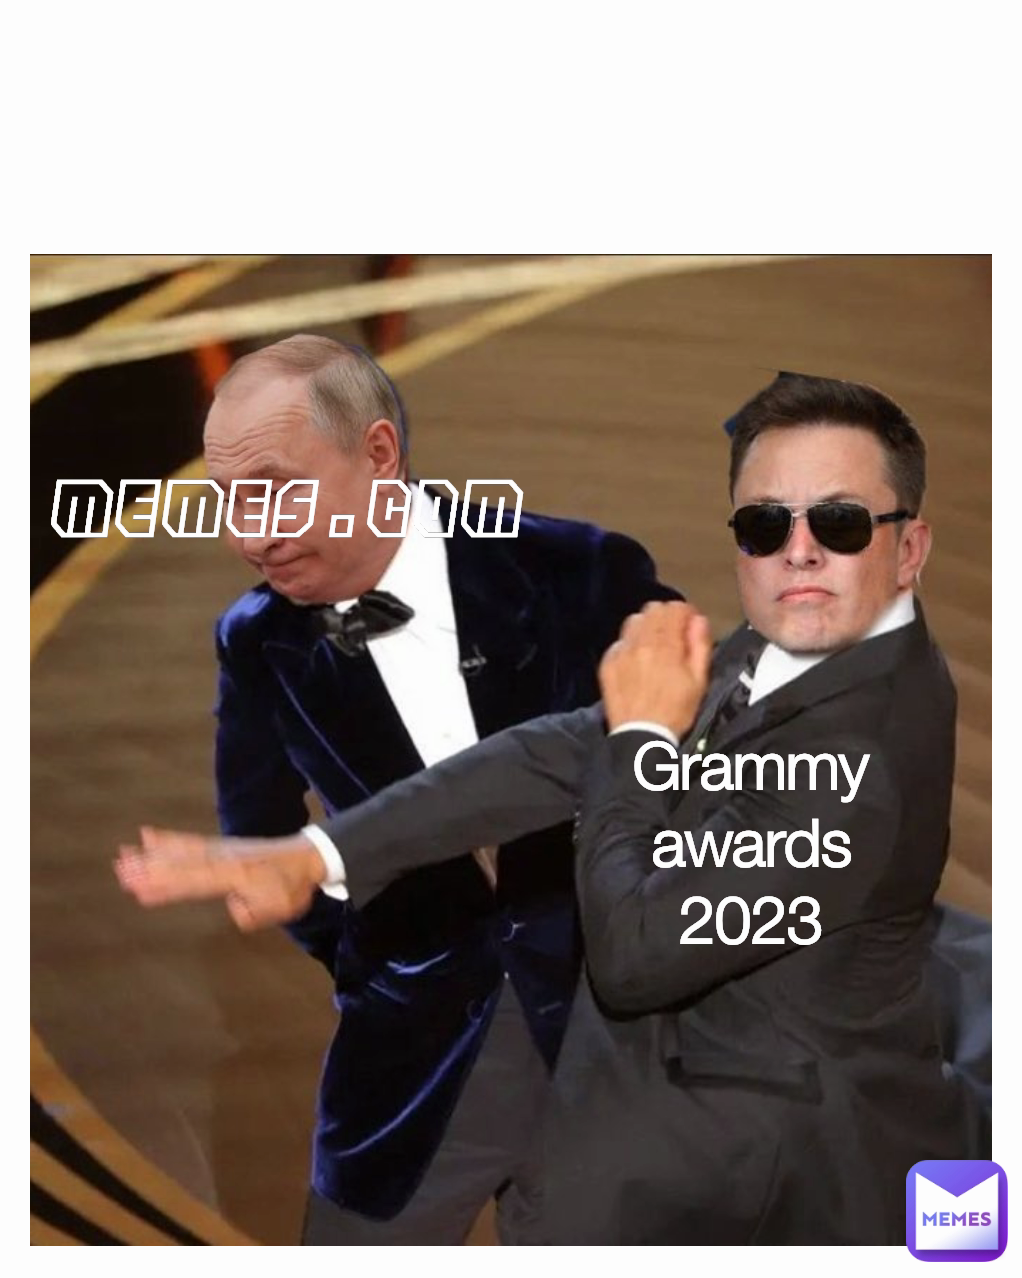 Grammy awards 2023 memes.com